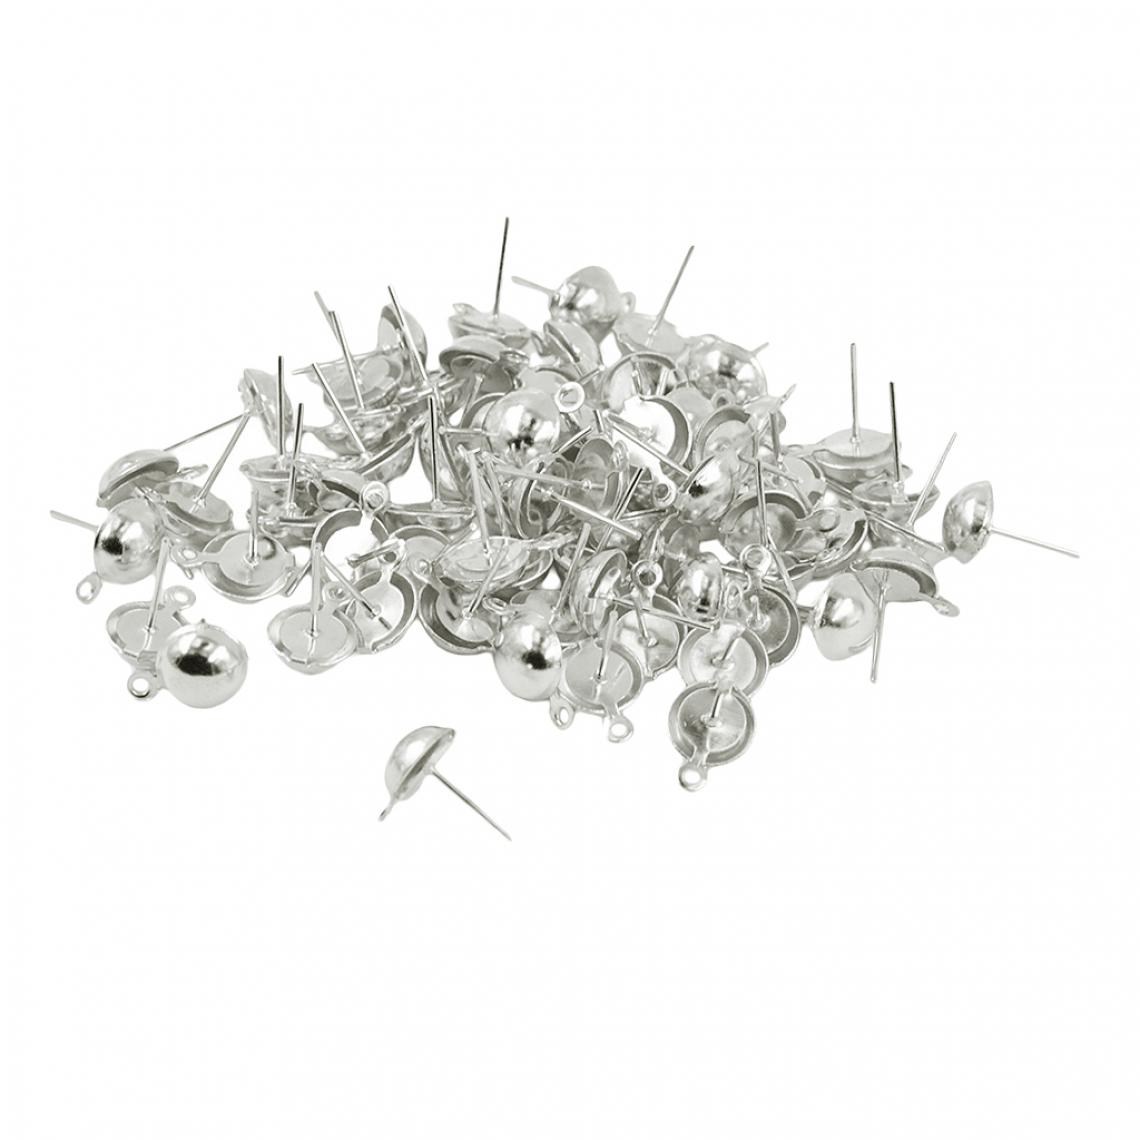 marque generique - 100 pièces boucles d'oreilles demi-rondes ébauches base cabochon réglages résultats argent - Perles